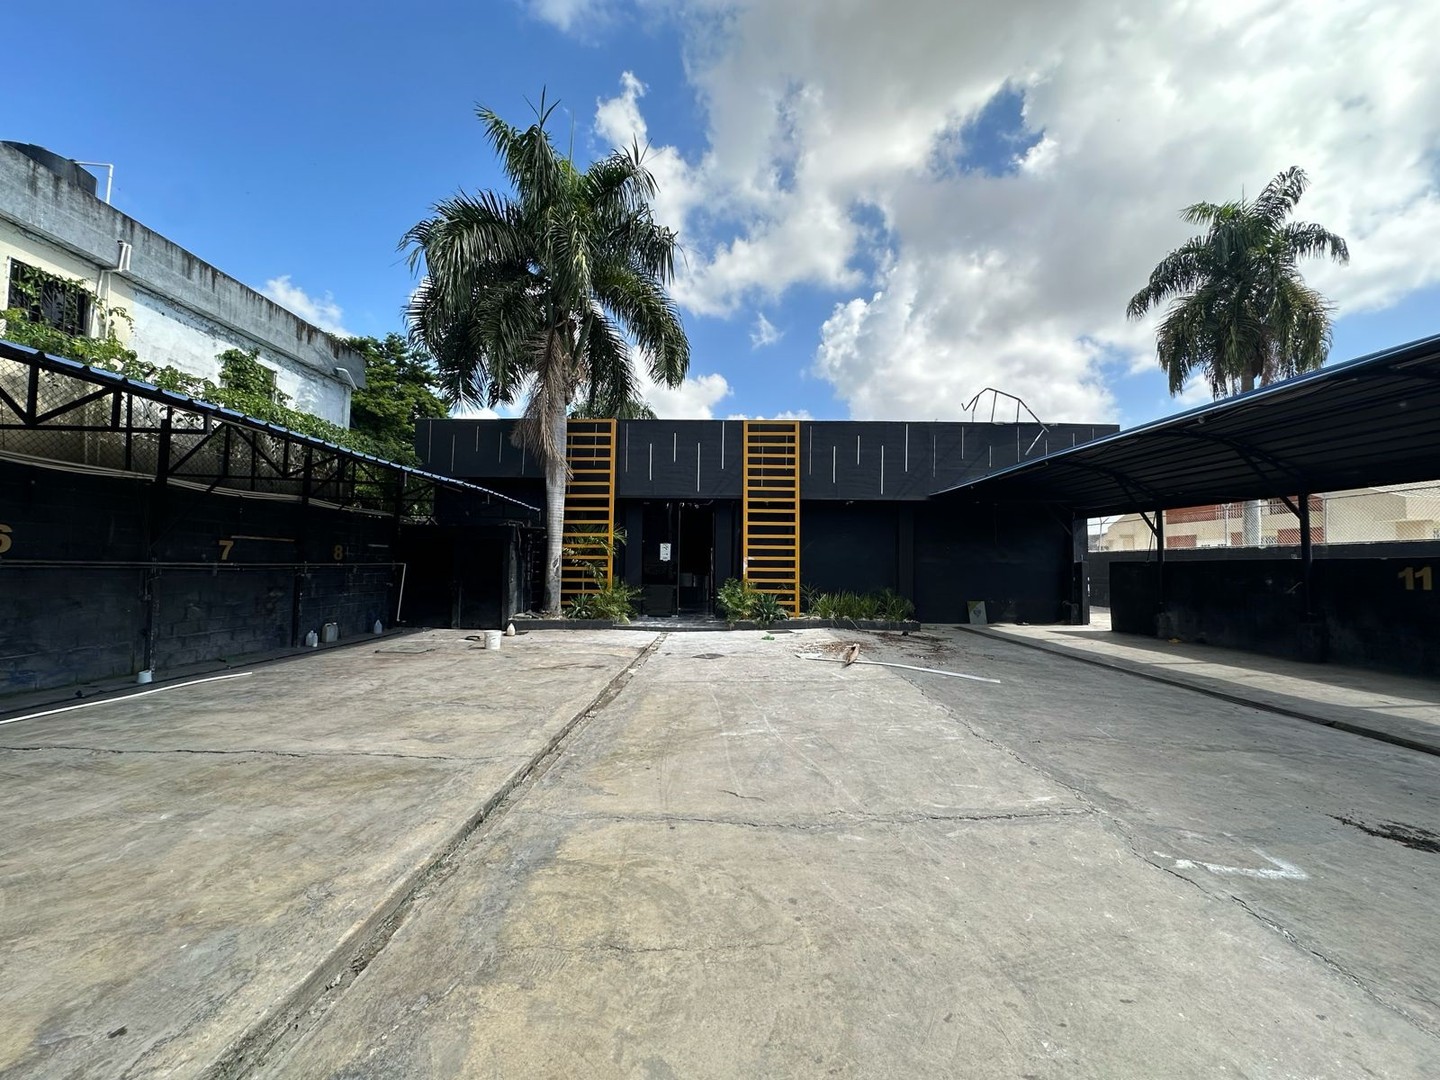 oficinas y locales comerciales - Discoteca y Carwash en venta en la Av. Venezuela 